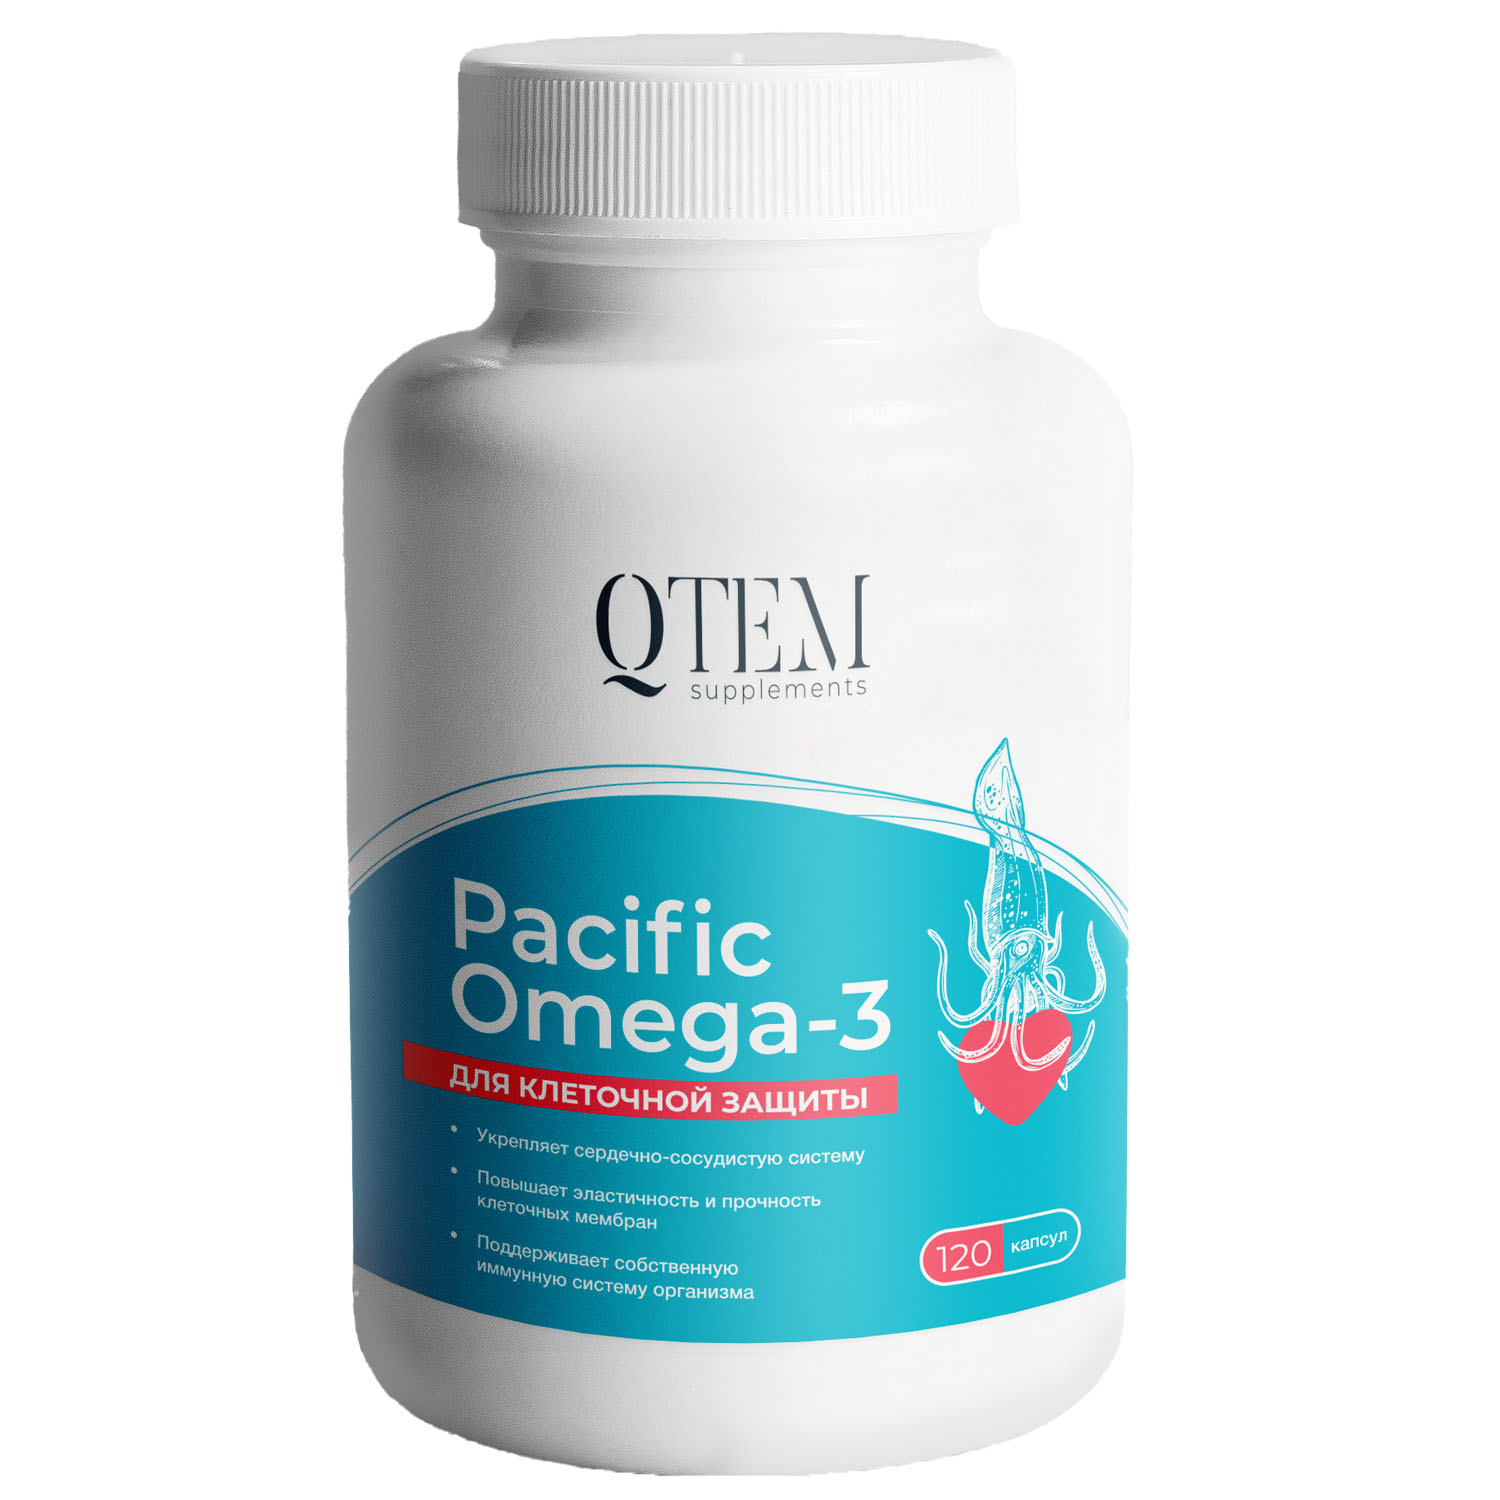 Qtem Комплекс для клеточной защиты Pacific Omega 3, 120 капсул (Qtem, Supplement)